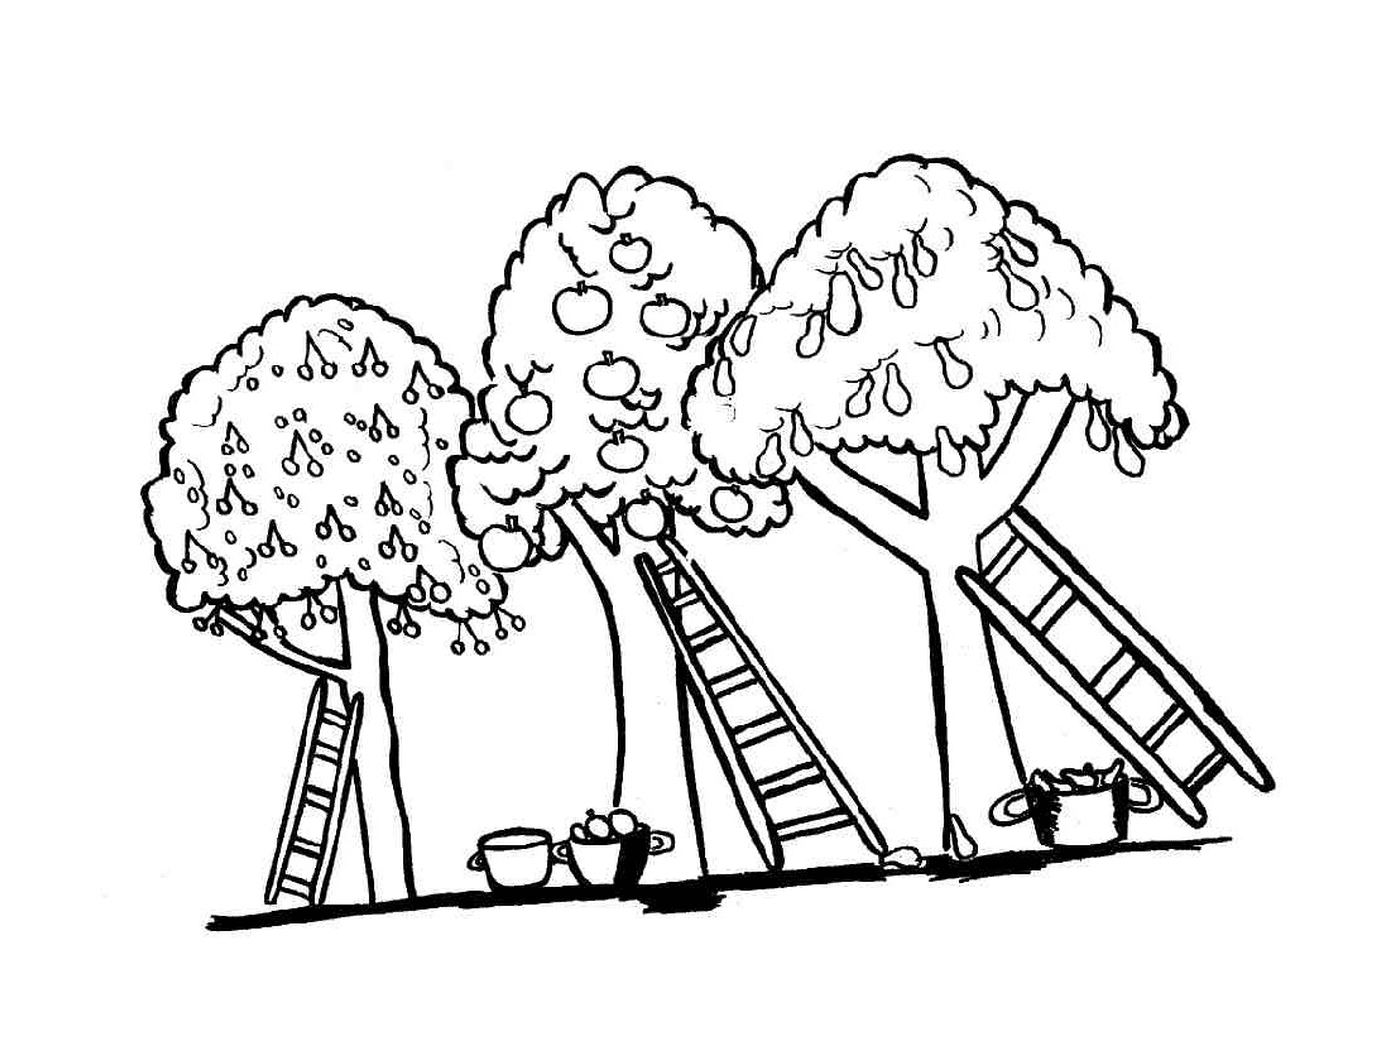  Bäume und Leitern 